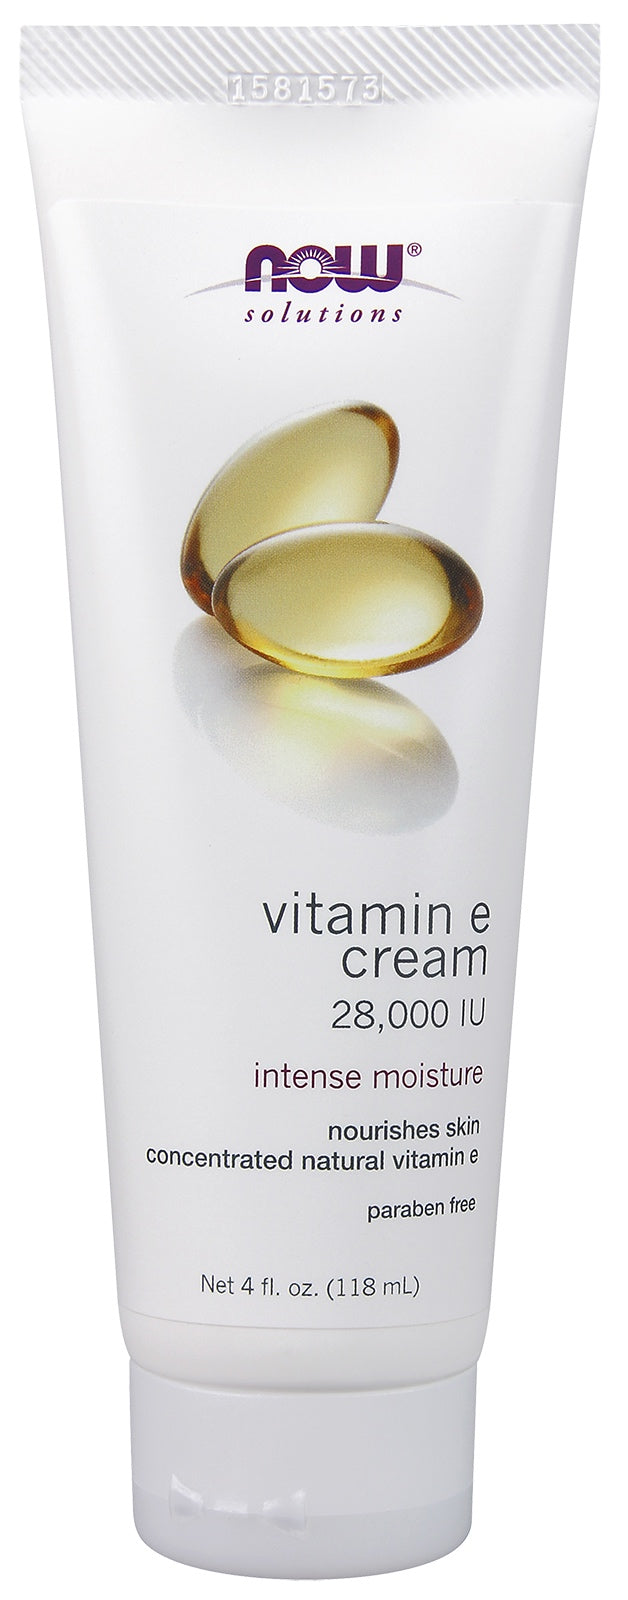 Vitamin E Cream 28,000 IU, 4 oz. , Brand_NOW Foods Form_Cream Size_4 Oz